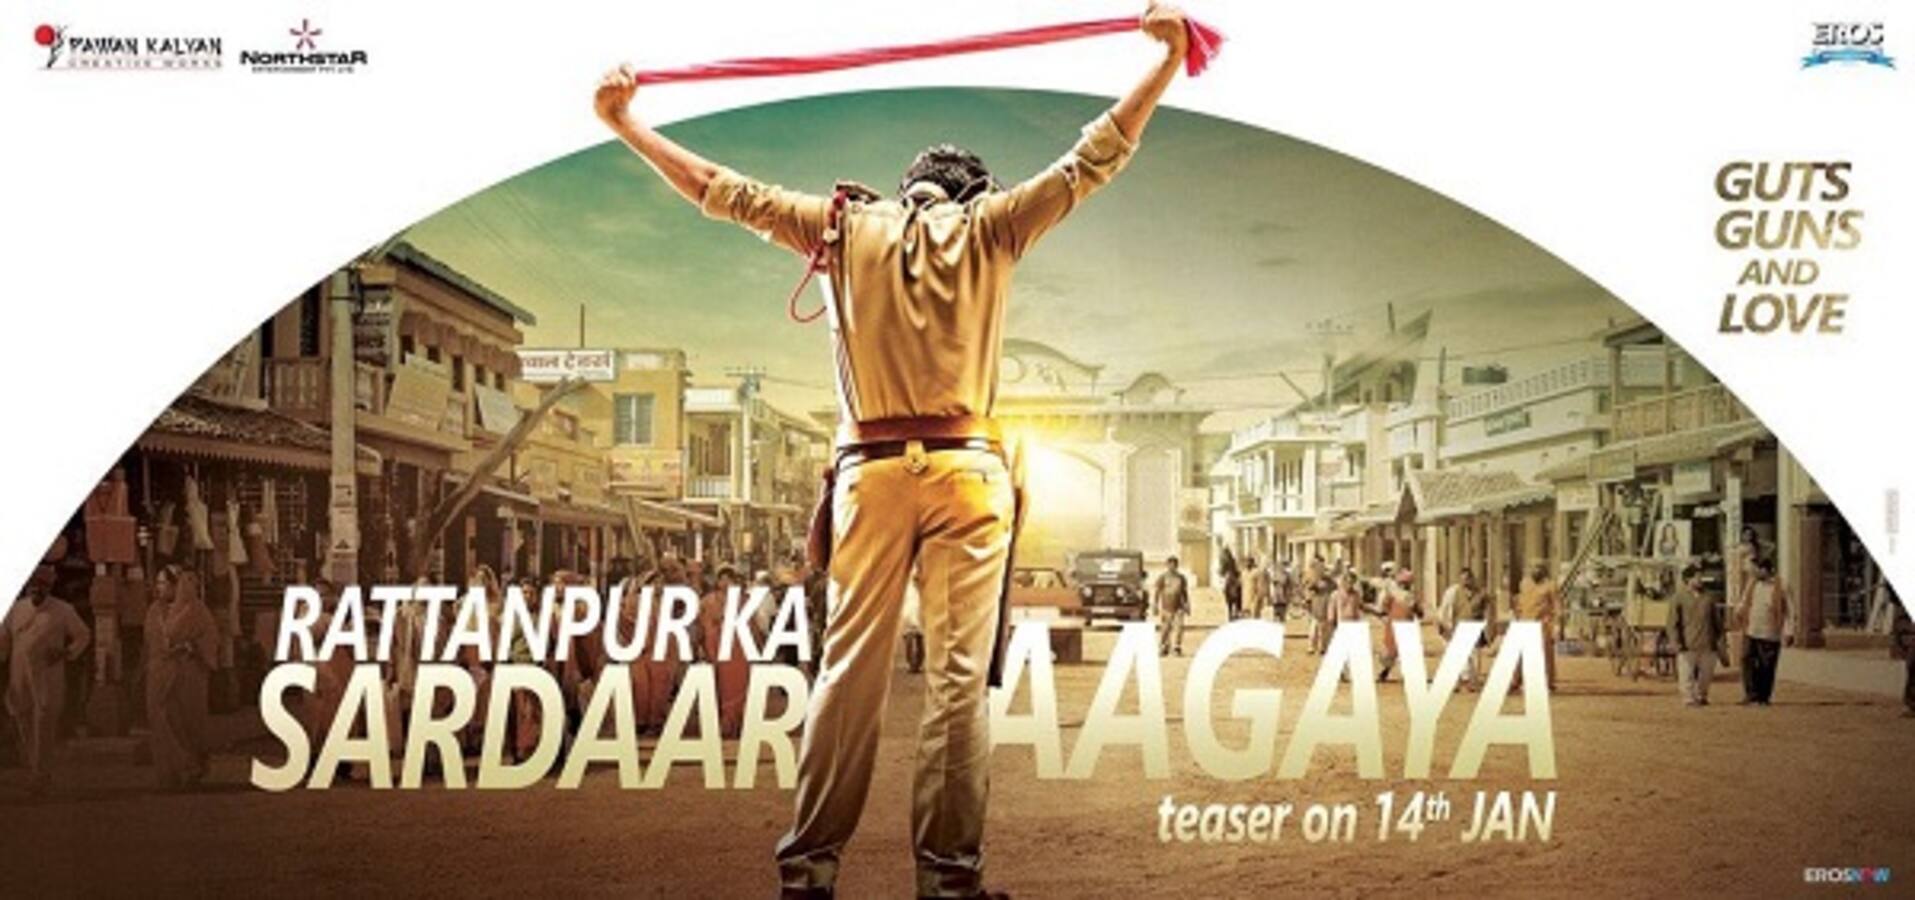 Sardar Gabbar Singh poster: Pawan Kalyan's film looks kickass!